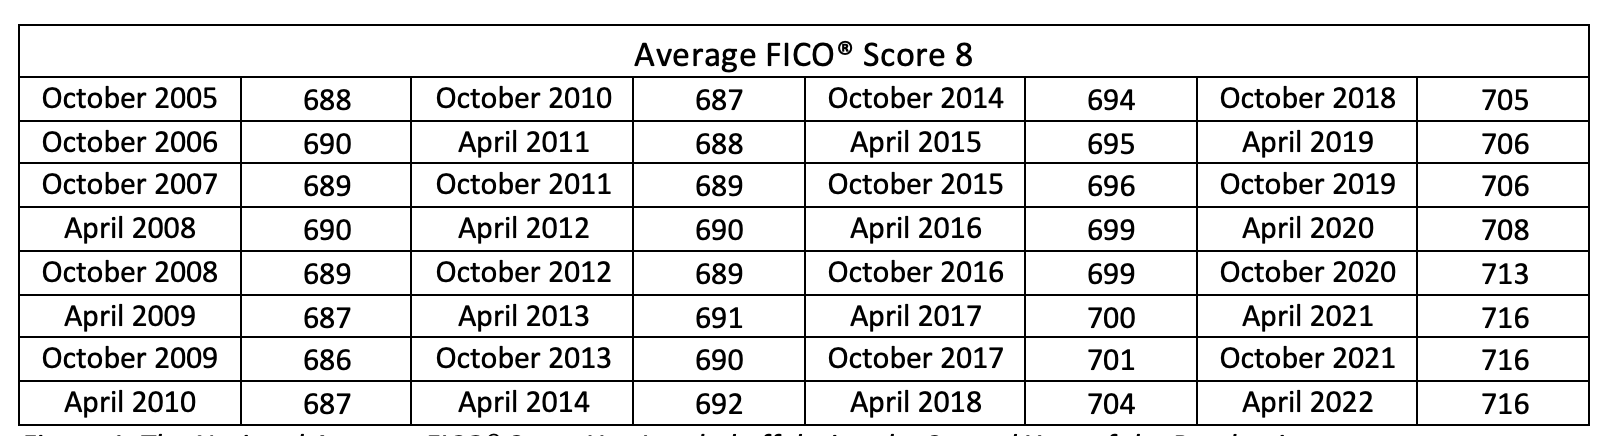 Average FICO Score 2022